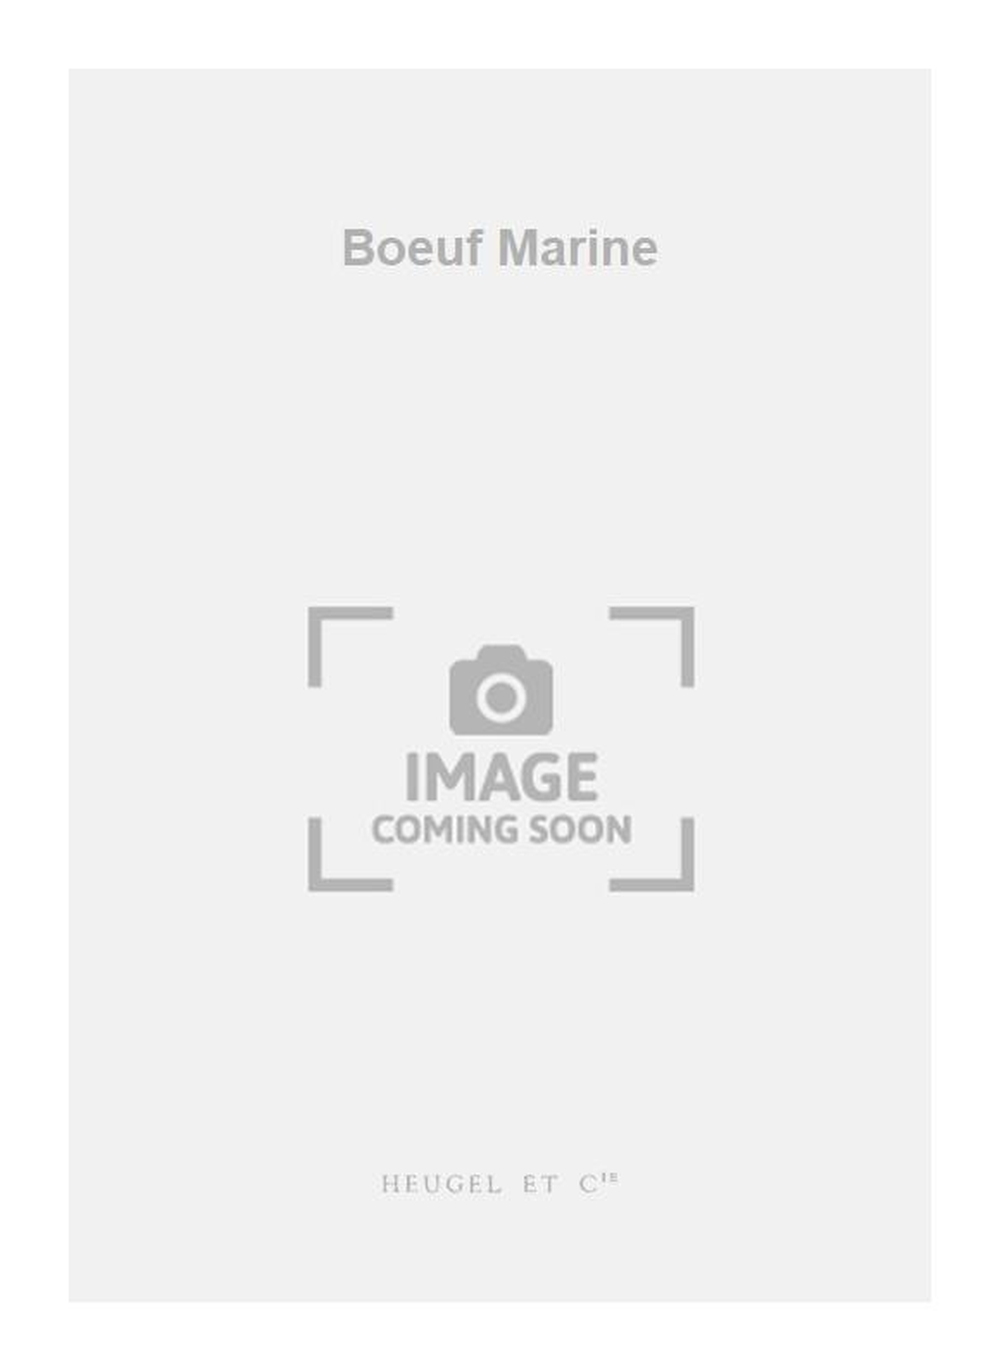 Georges Boeuf: Boeuf Marine